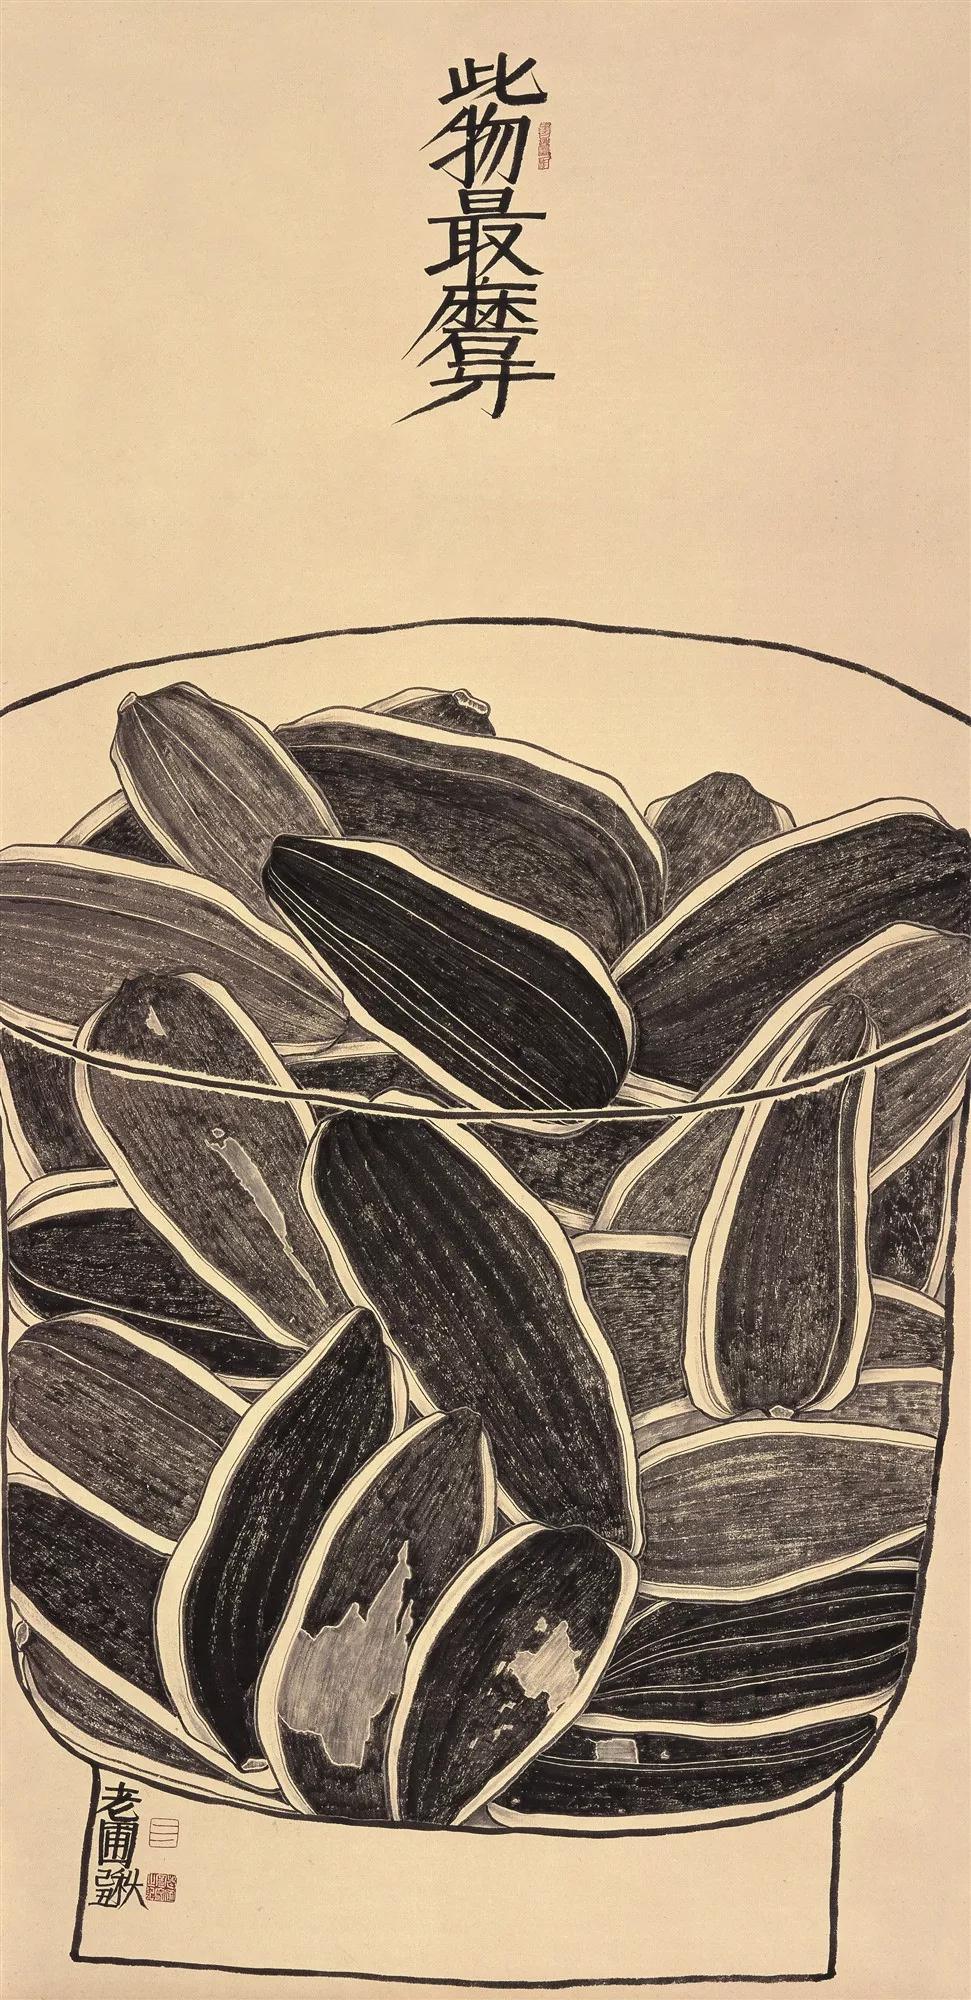 赞寿光 画蔬菜——《菜都蔬香》老圃画展将于9月14日在寿光市美术馆